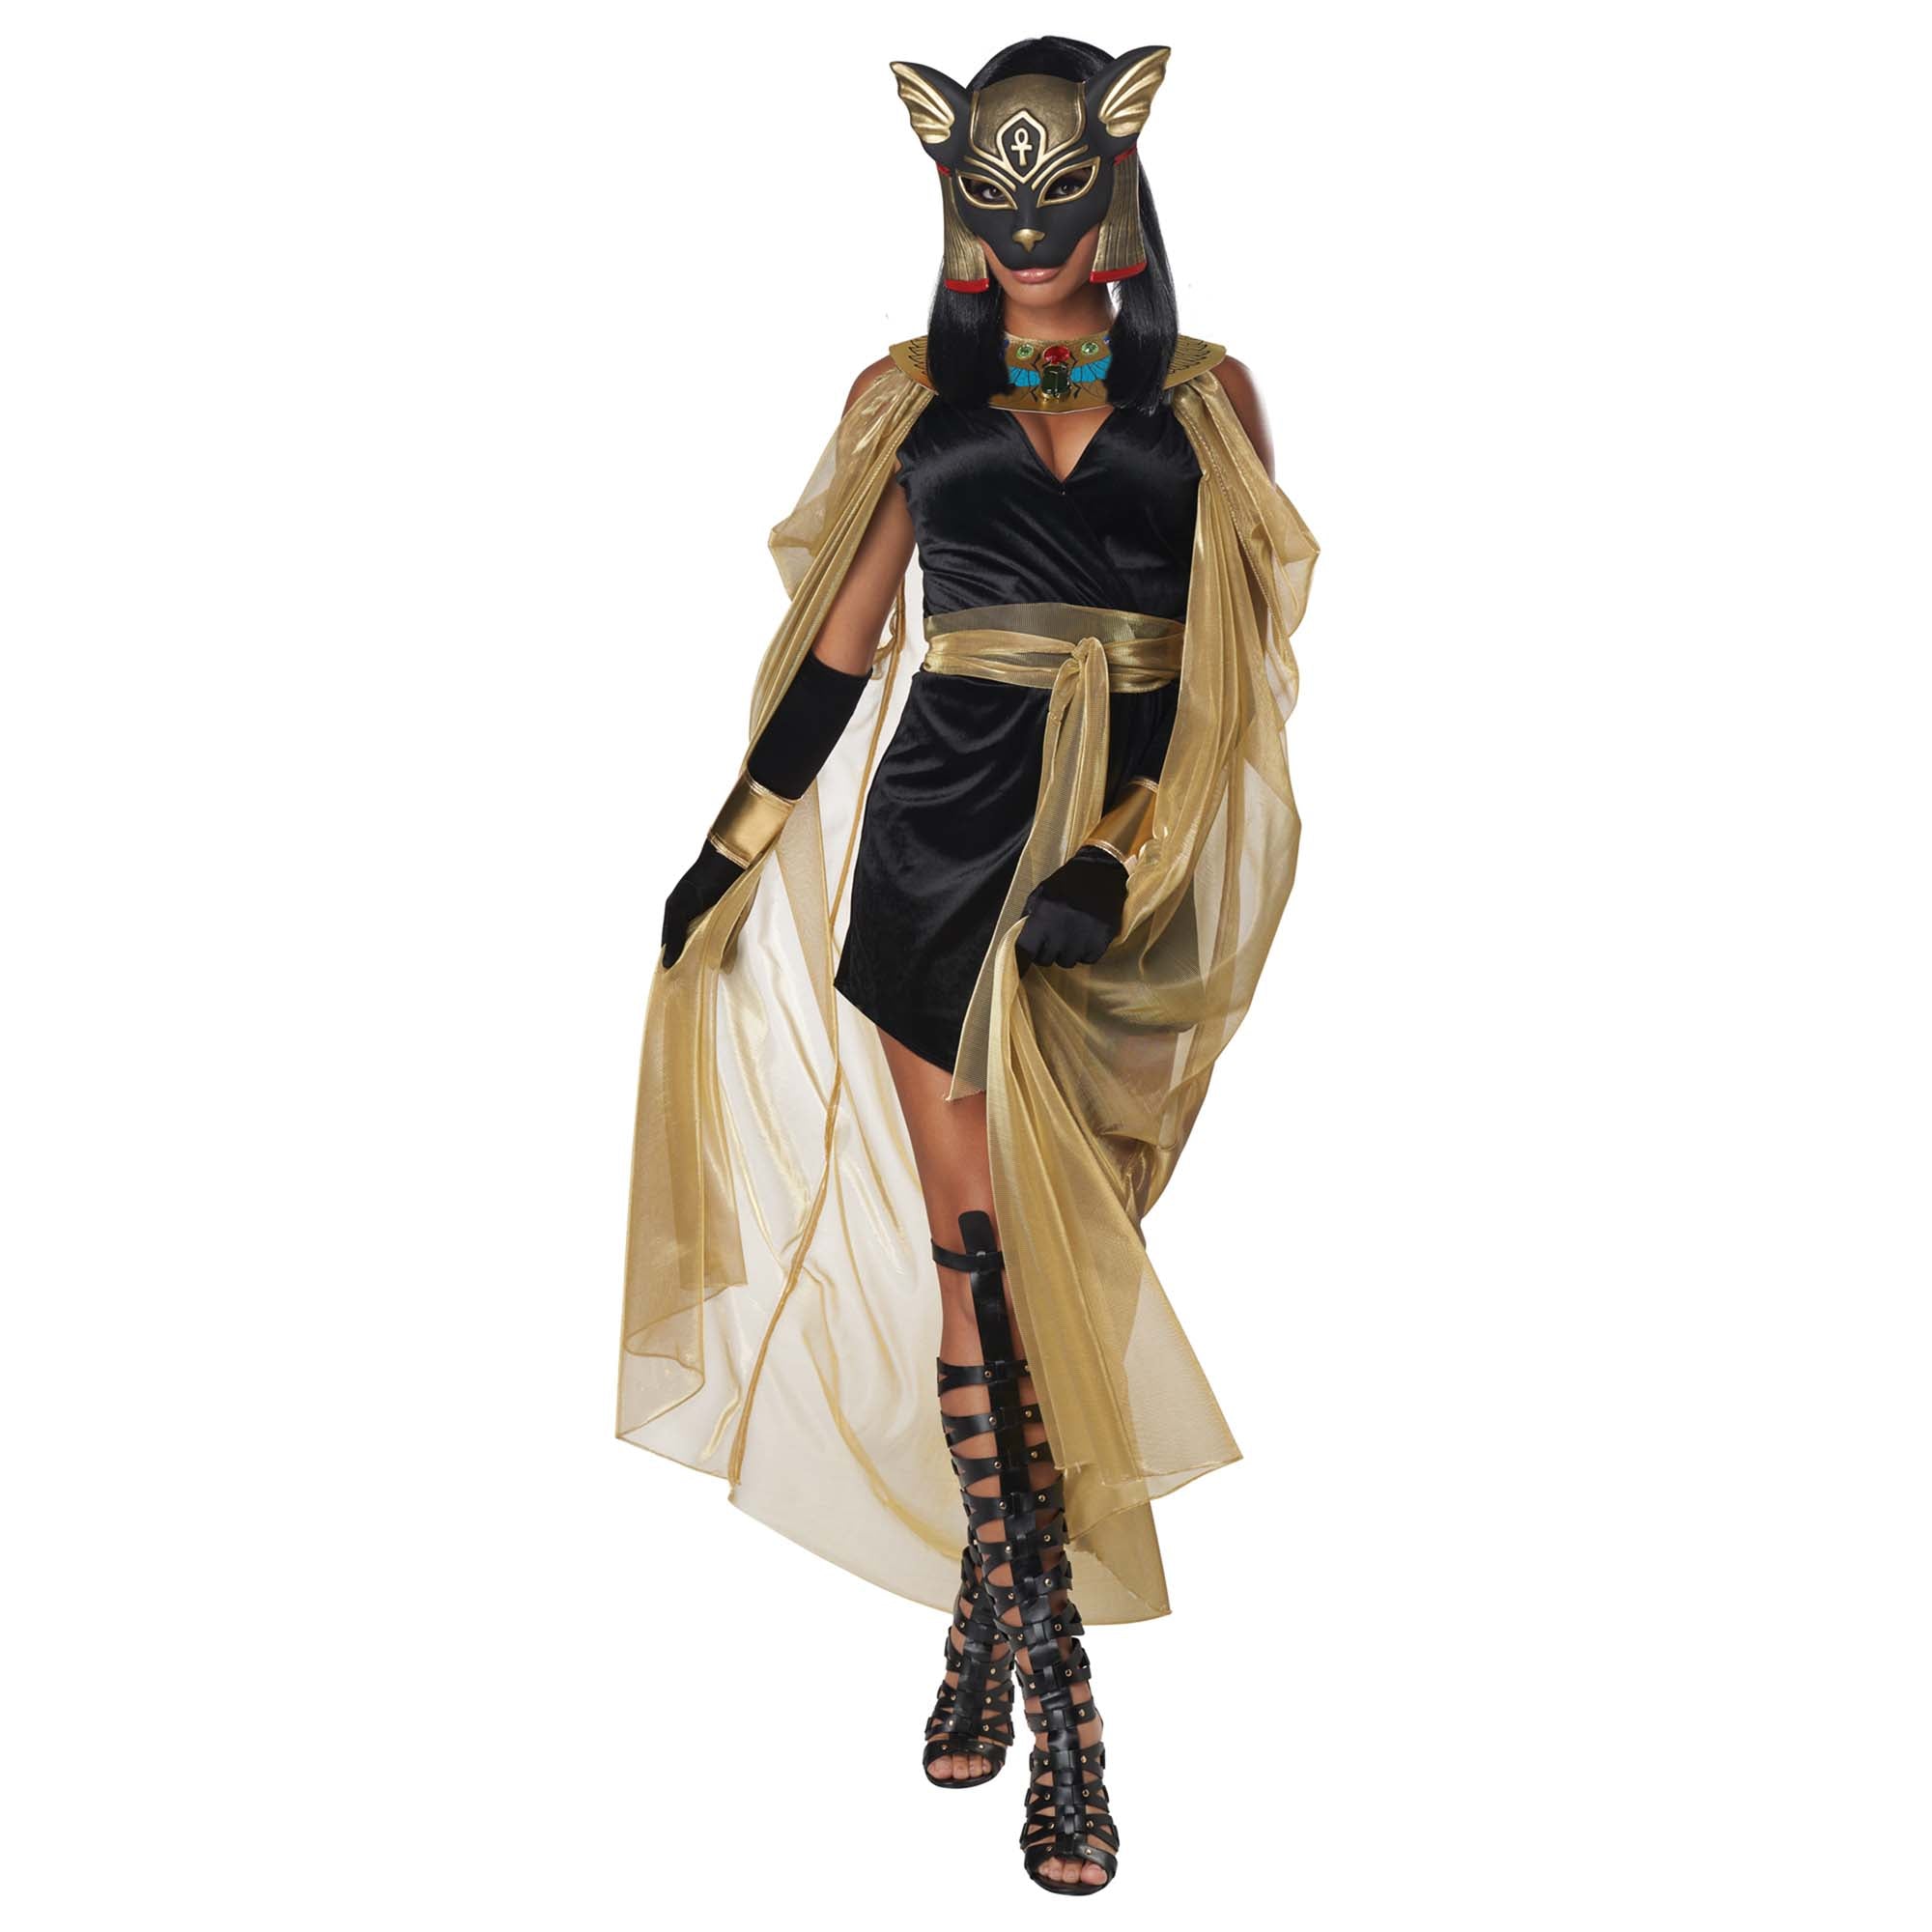 Feline Egyptian Goddess Costume for Adults, Black Dress